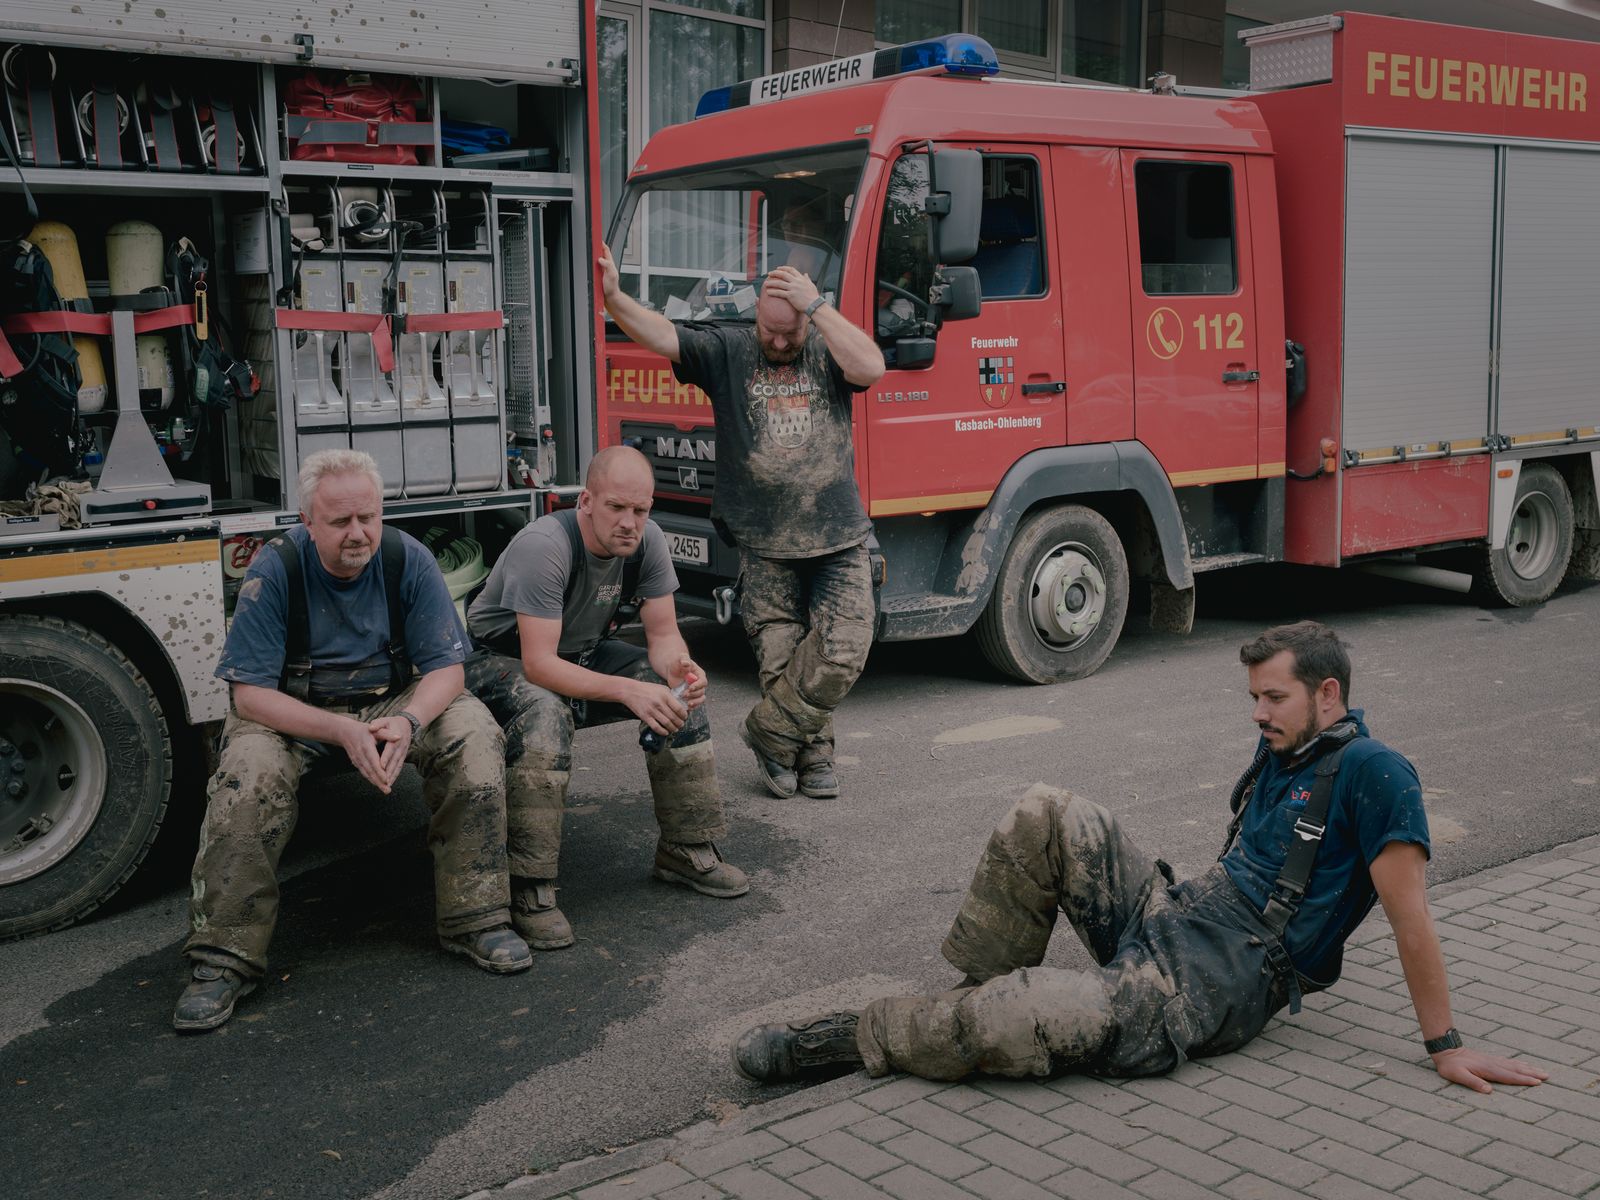 © DOCKS Collective - Volunteer firefighters from Vettelschoss take a break in Bad Neuenahr-Ahrweiler, Germany on July 17. 2021.